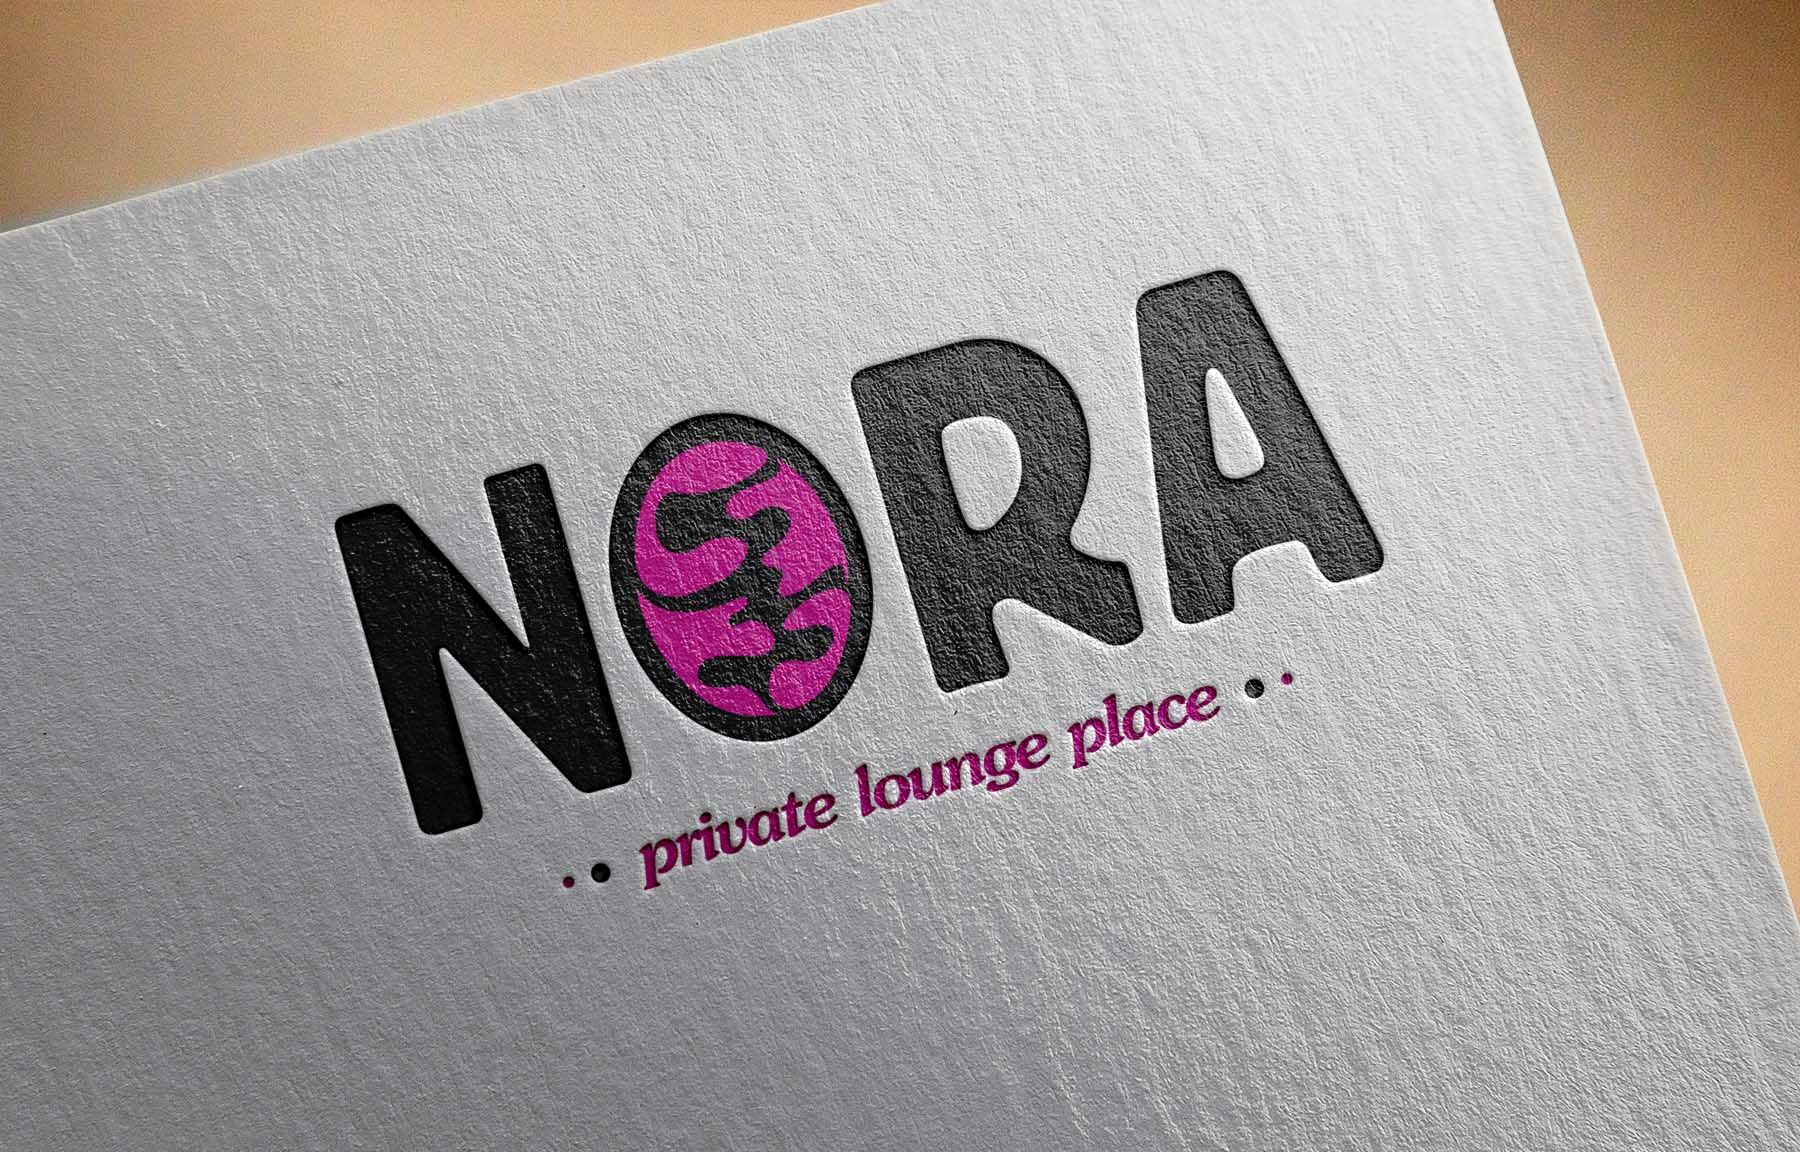 Логотип для NORA - дизайнер freiheit110691